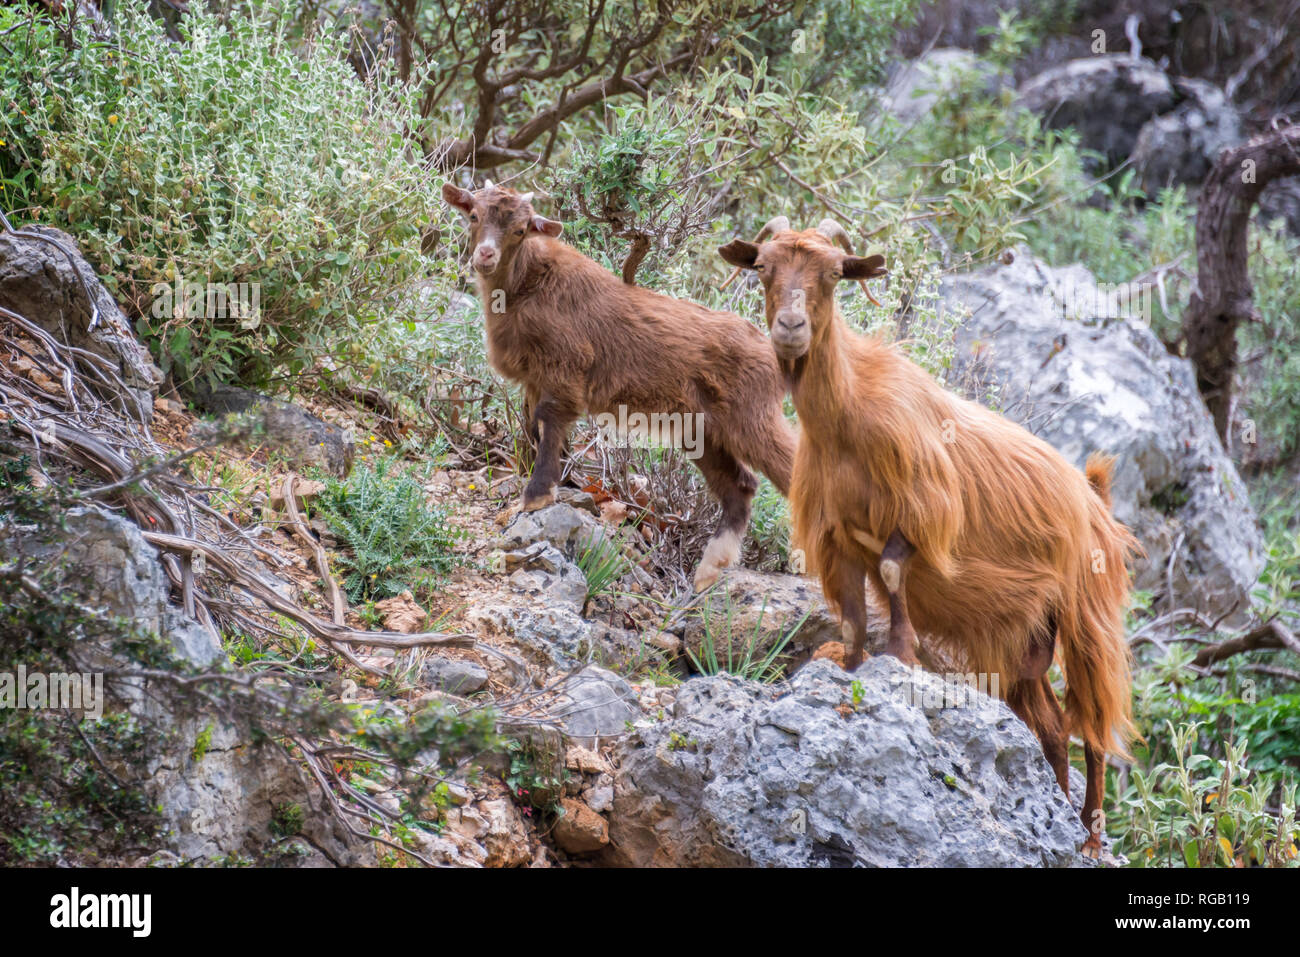 Neugierig Ziege und ihr Kind bergsteigen Felsen in Kreta, Griechenland Stockfoto